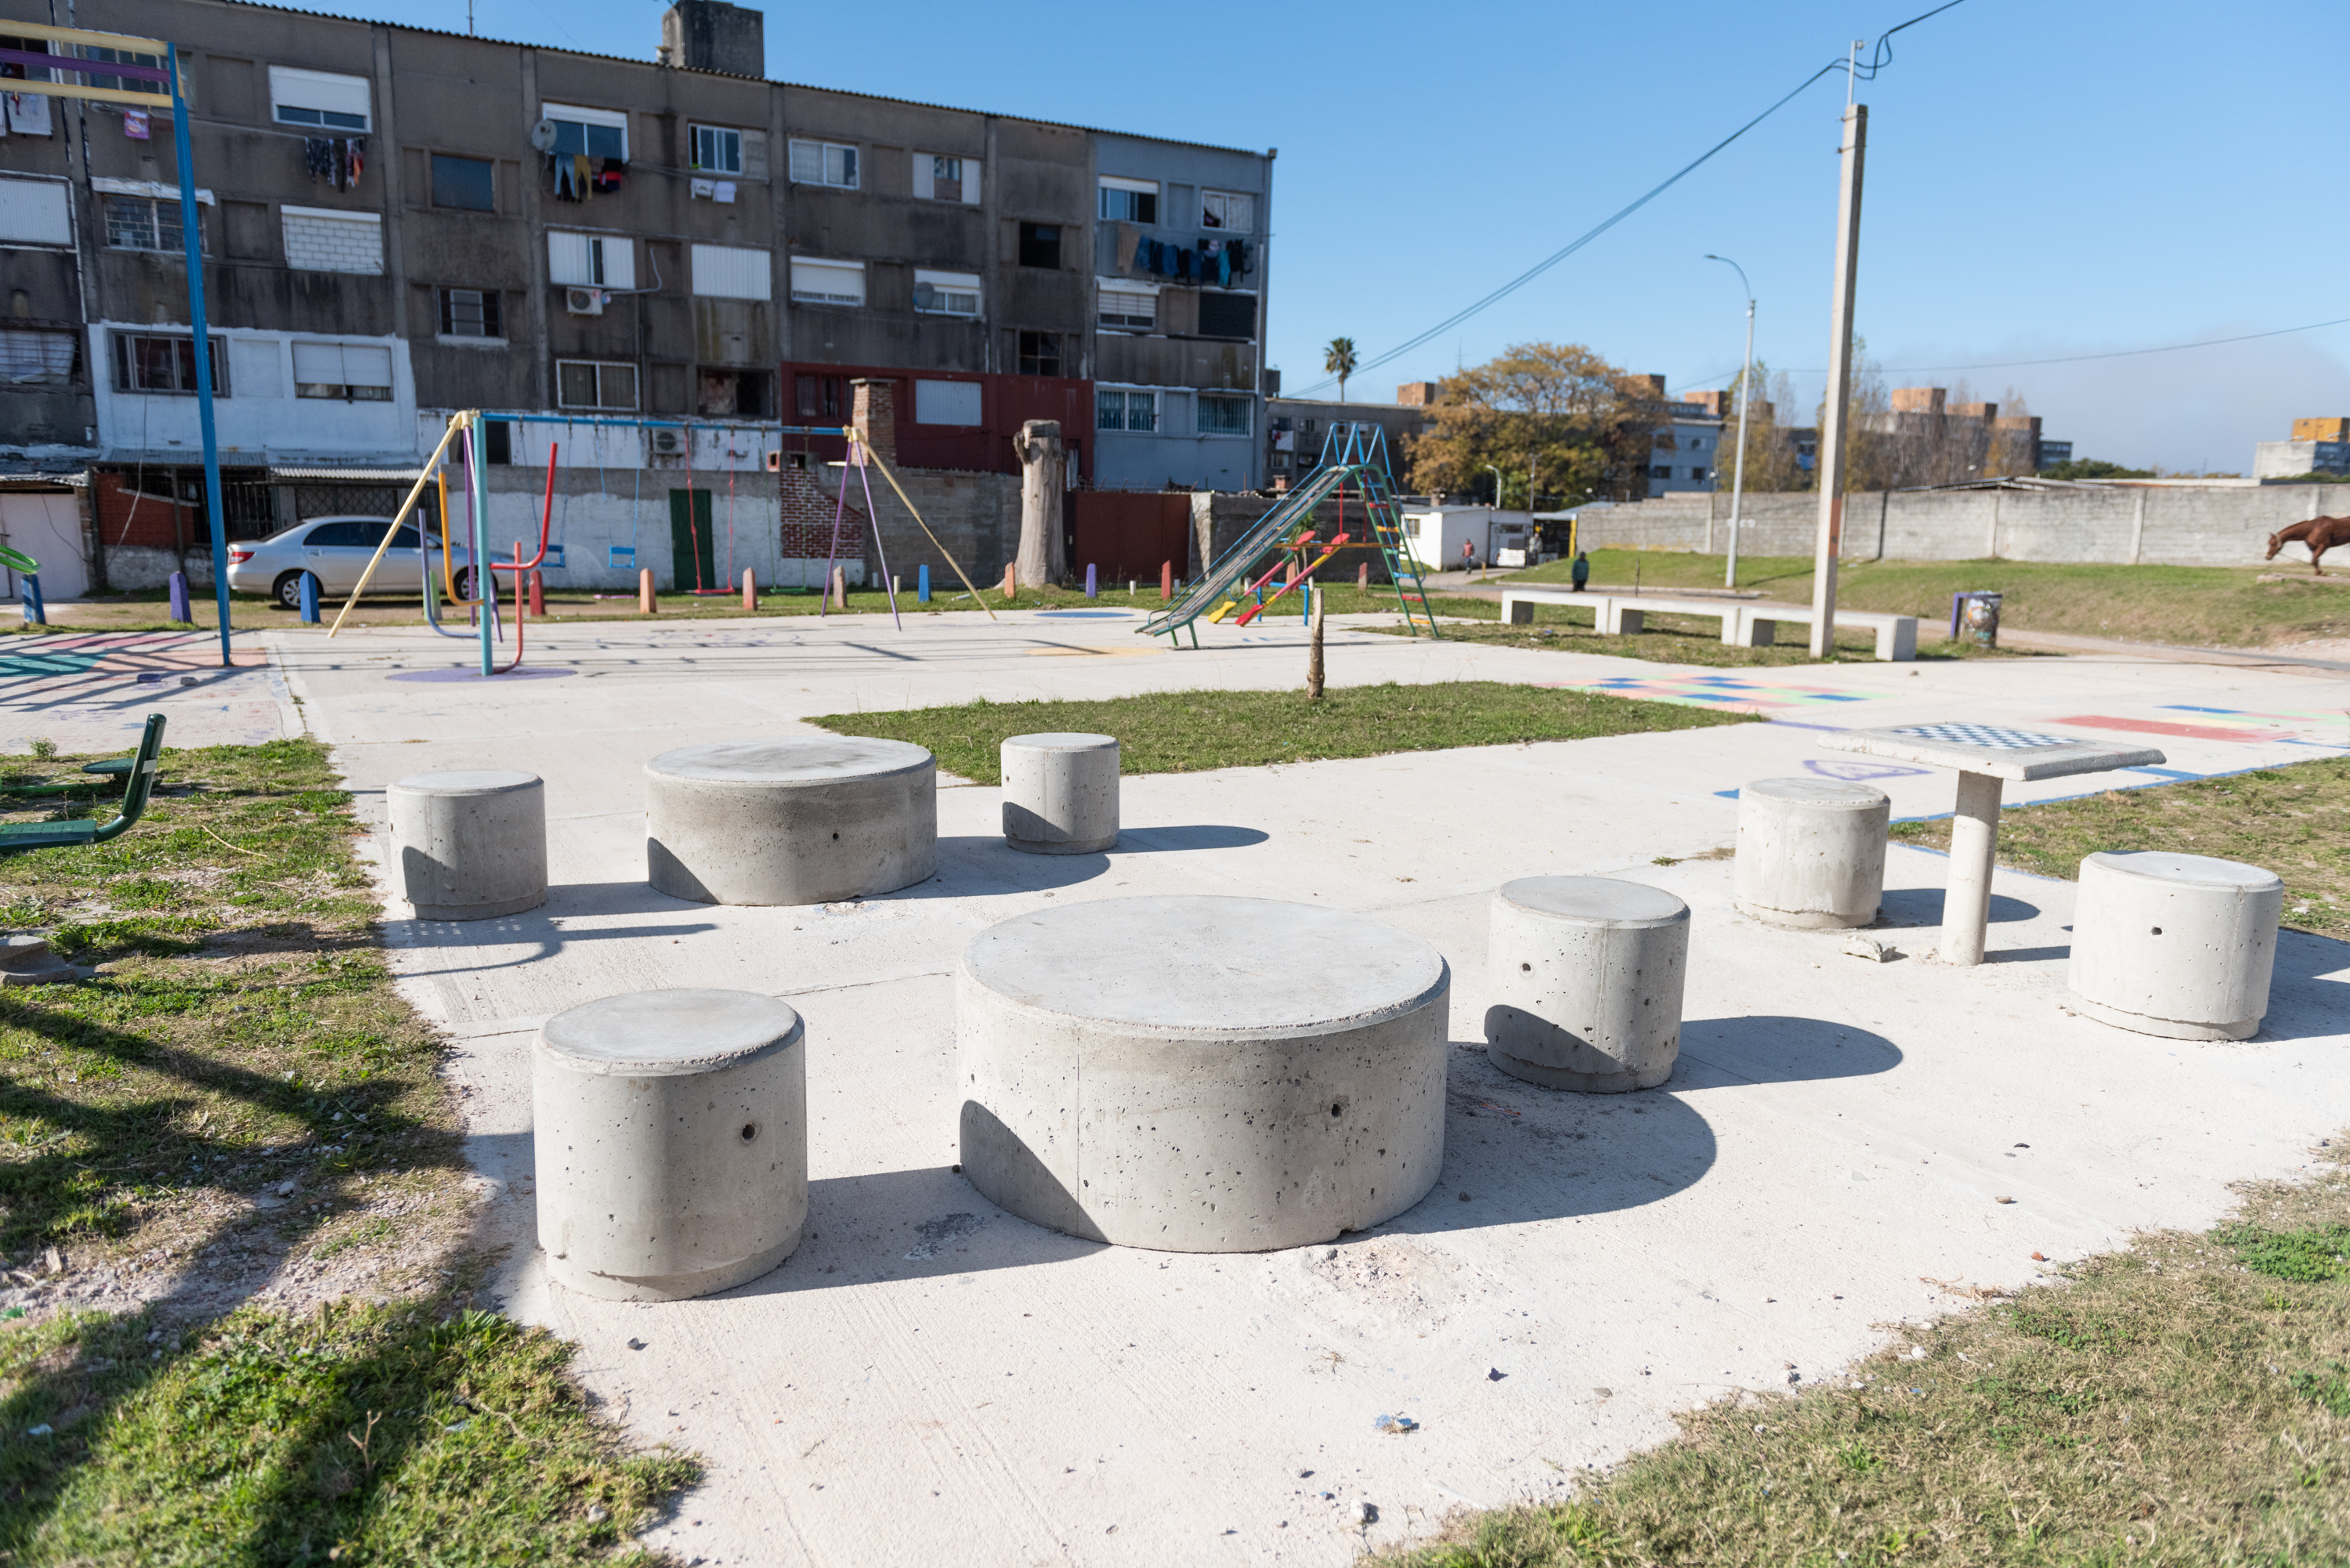 :Sustitución de mobiliario urbano y juegos infantiles en plaza INVE en el marco del Plan ABC+ Unión - Malvín Norte